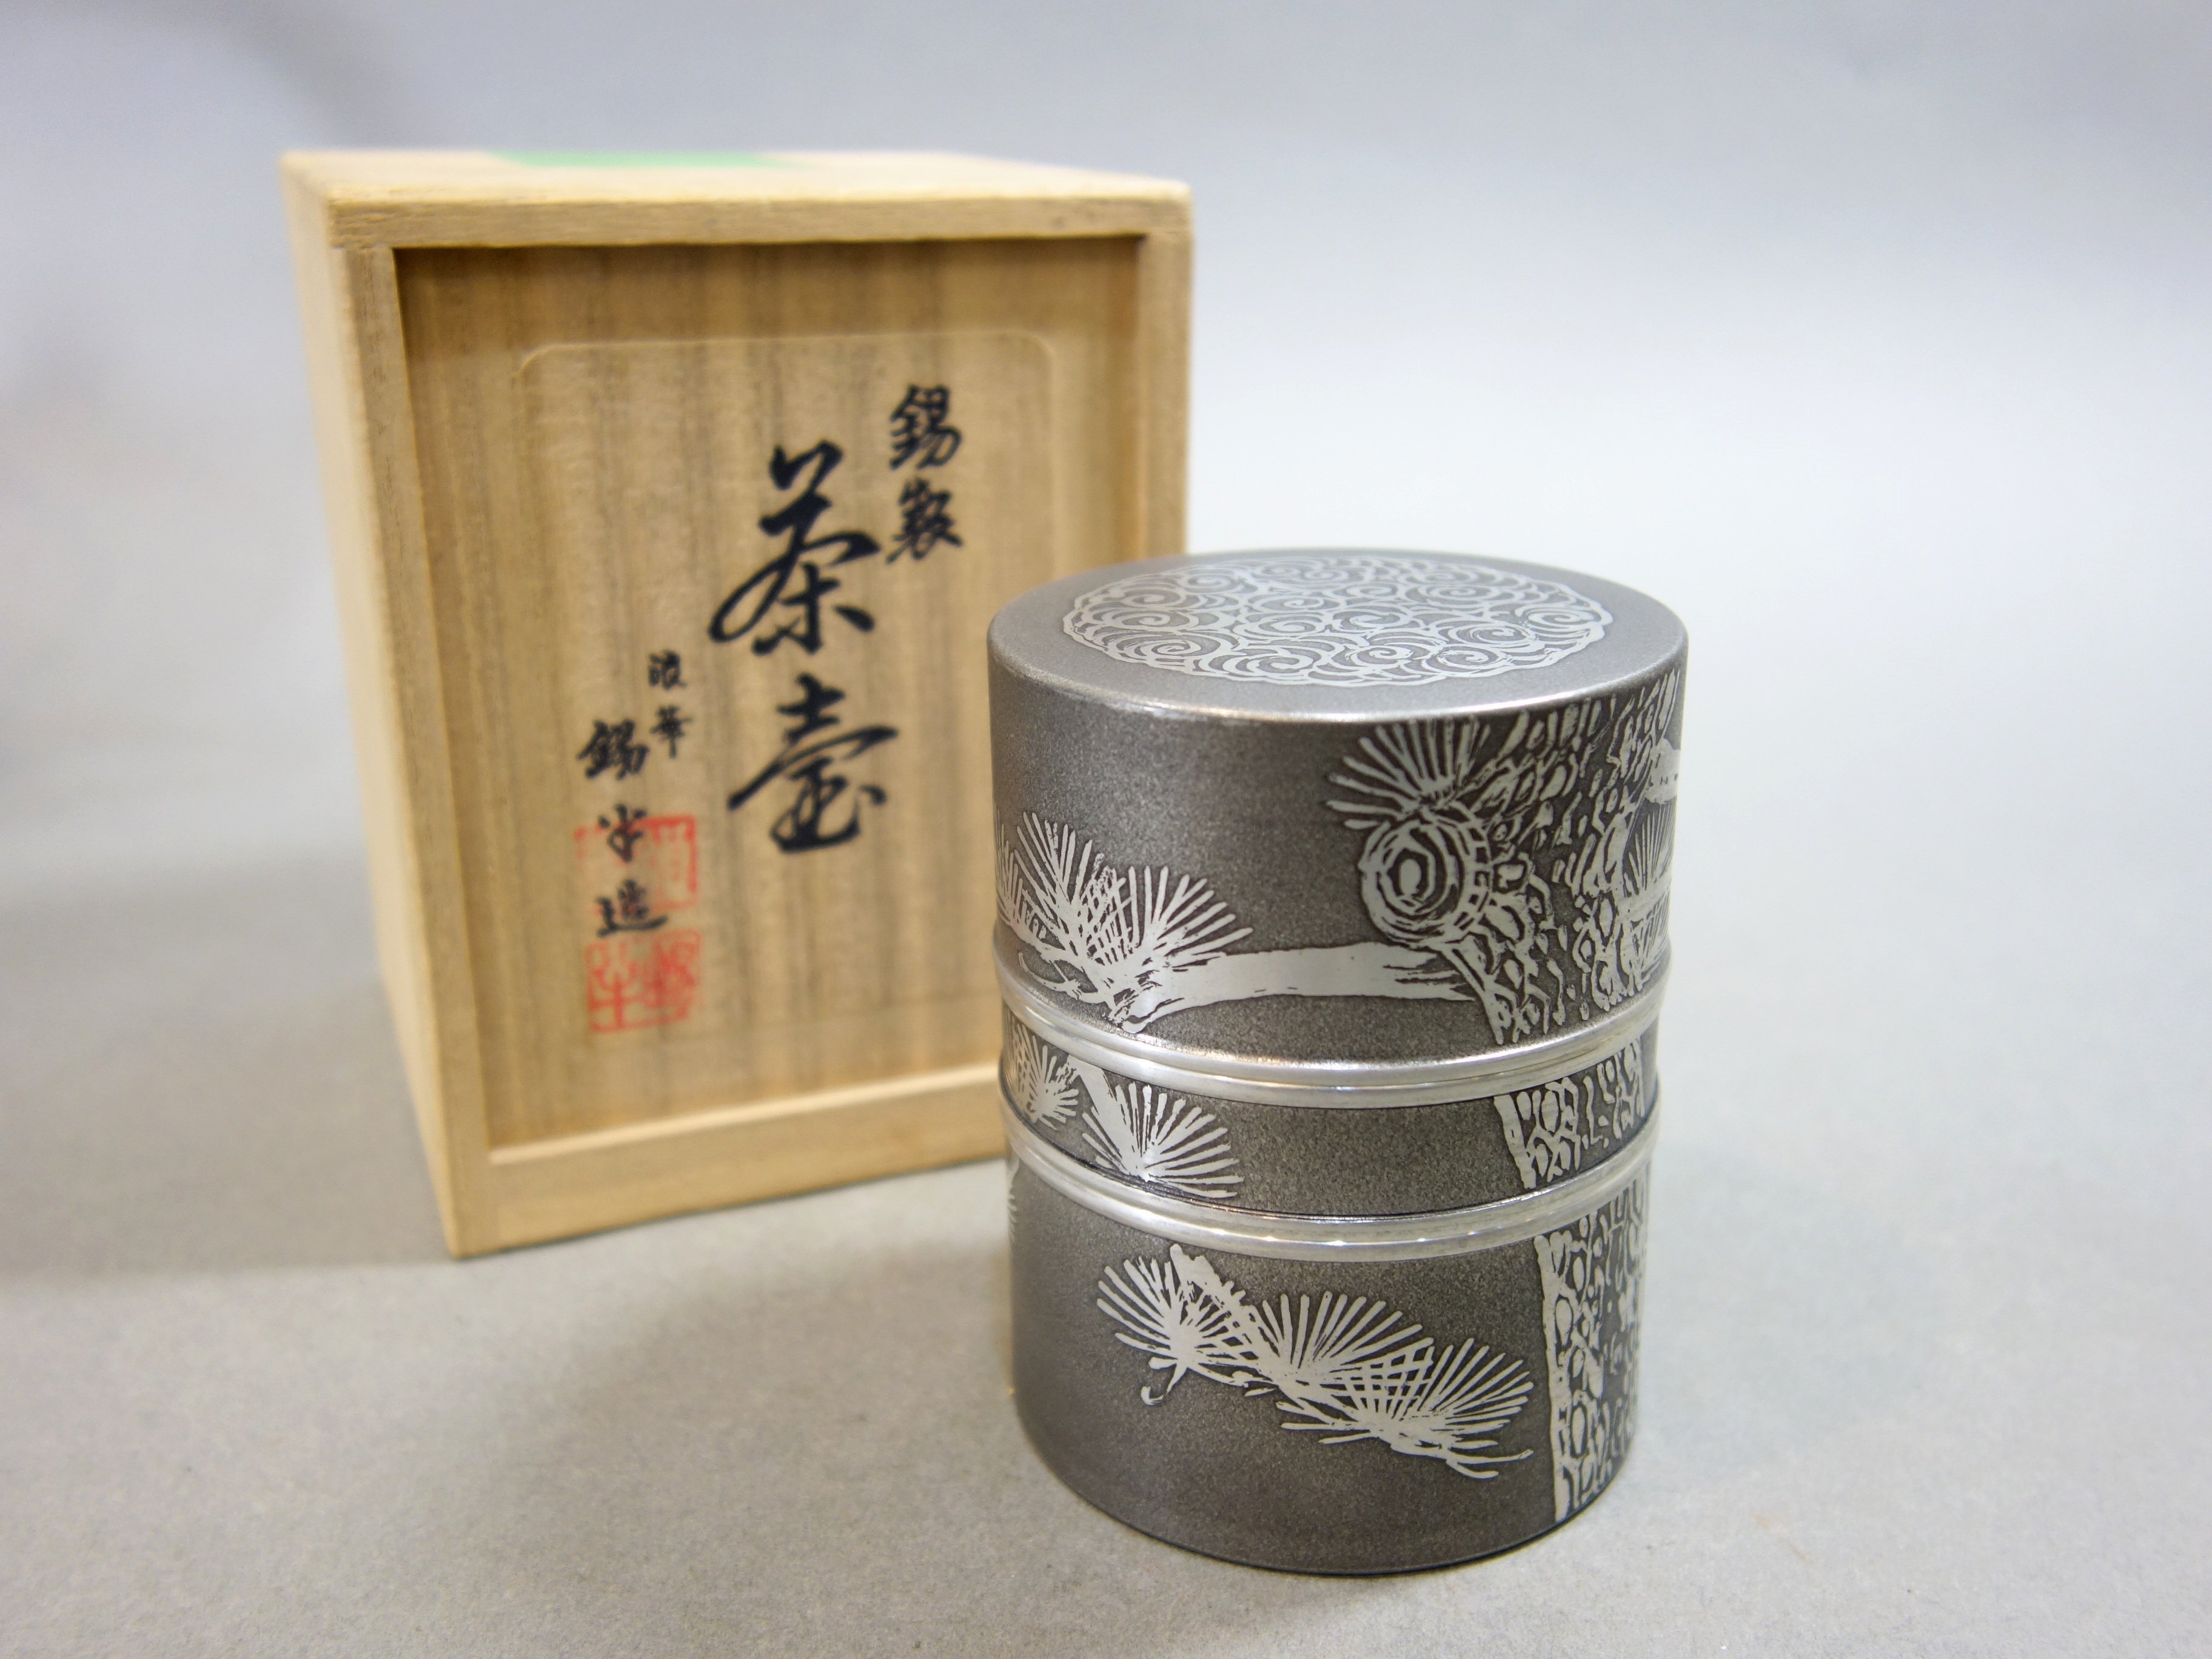 華寶軒』日本茶道具昭和時期本錫製錫半造長青松纹筒形中形茶入/茶葉罐 